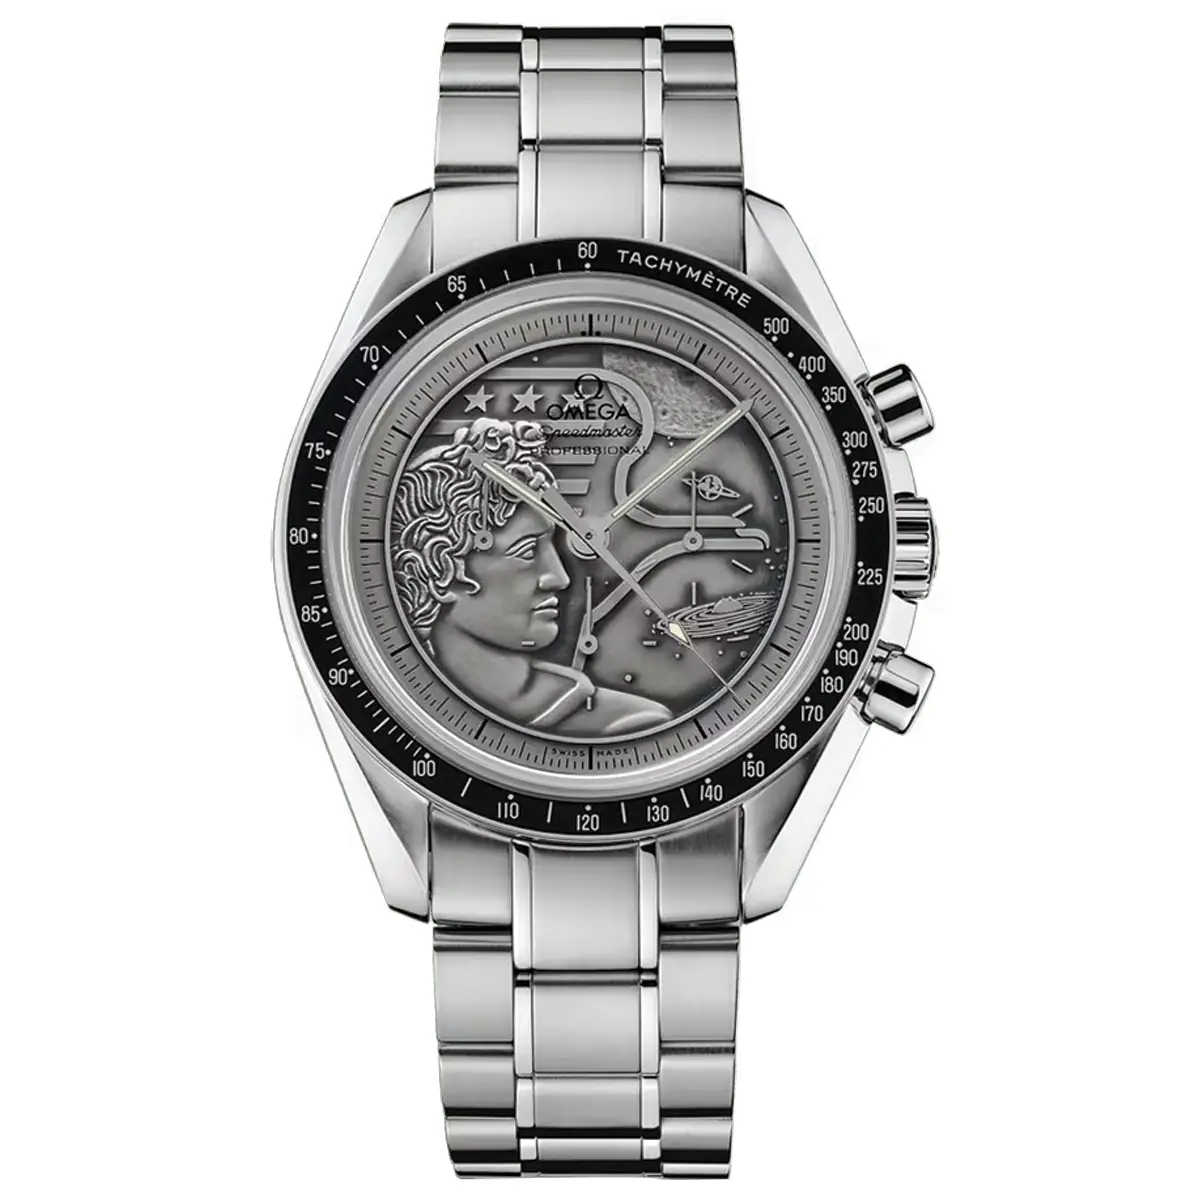 Đồng hồ 0mega Speedmaster Anniversary Chronograph Moonwatch 311.30.42.30.99.002 mặt số màu bạc. Dây đeo bằng thép. Thân vỏ bằng thép.